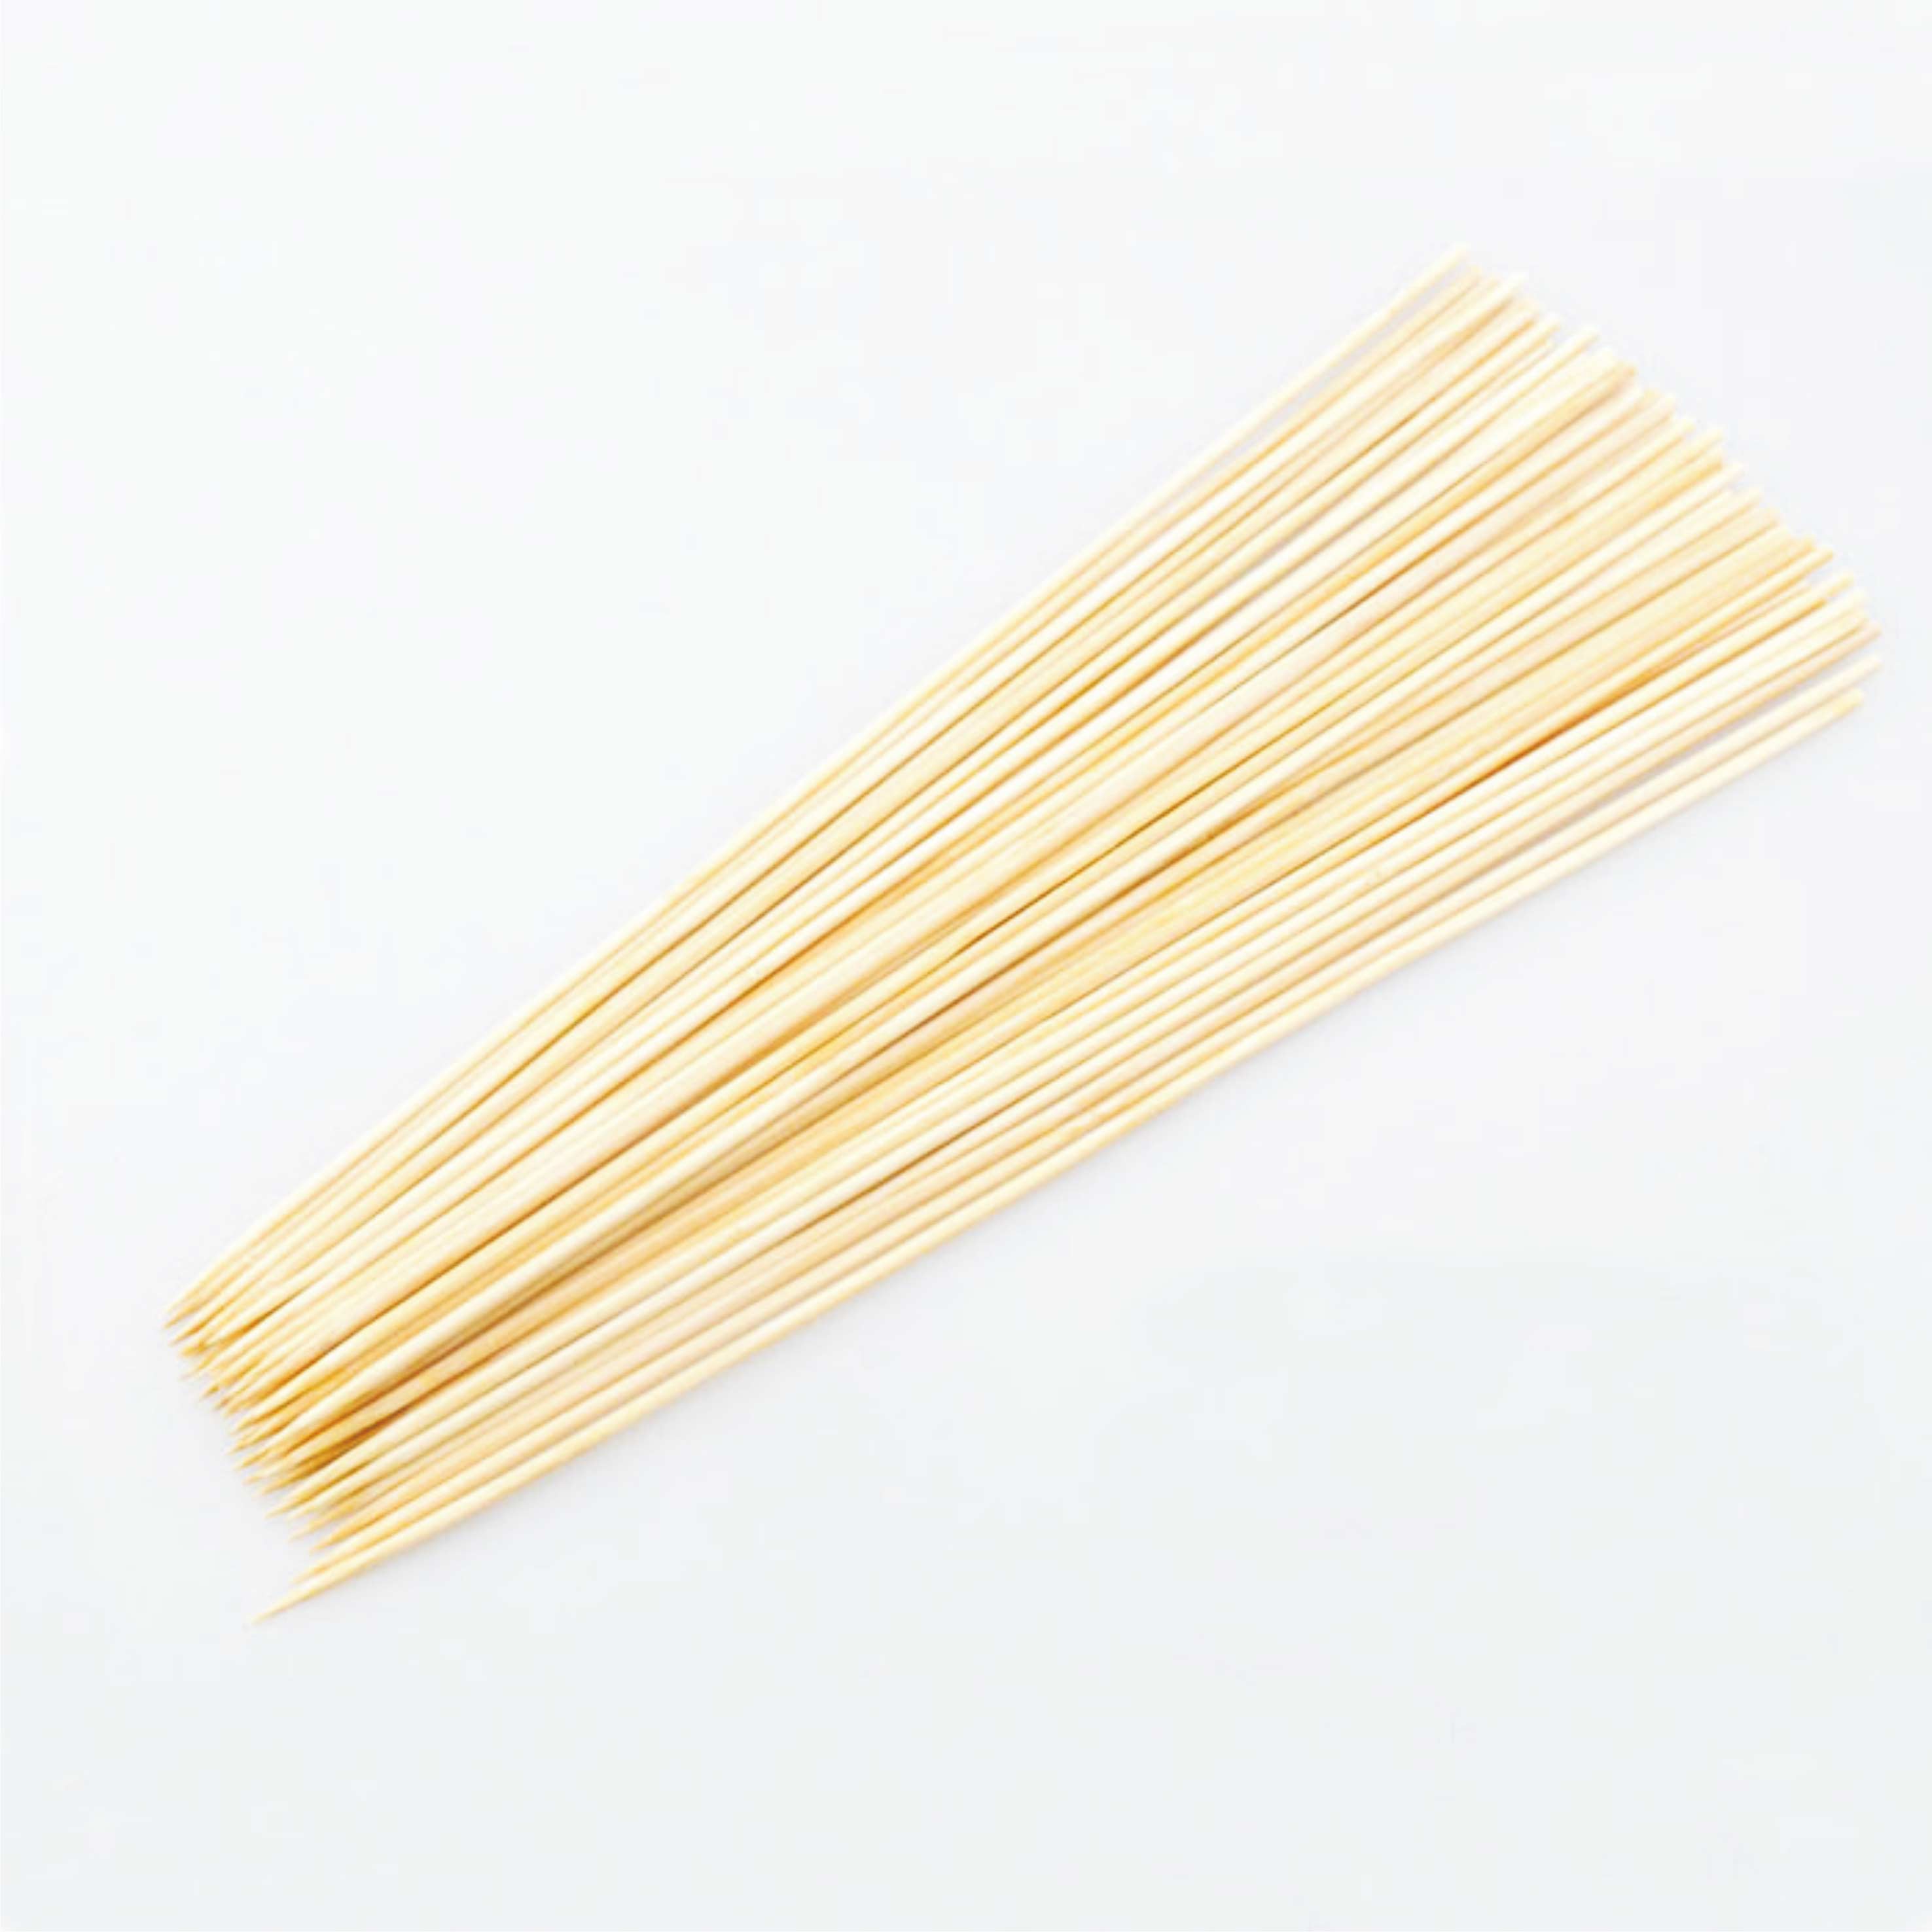 3.0mm*25cm 优质竹签 烧烤竹签 烤鱿鱼 串串香签 台湾烤肠签子